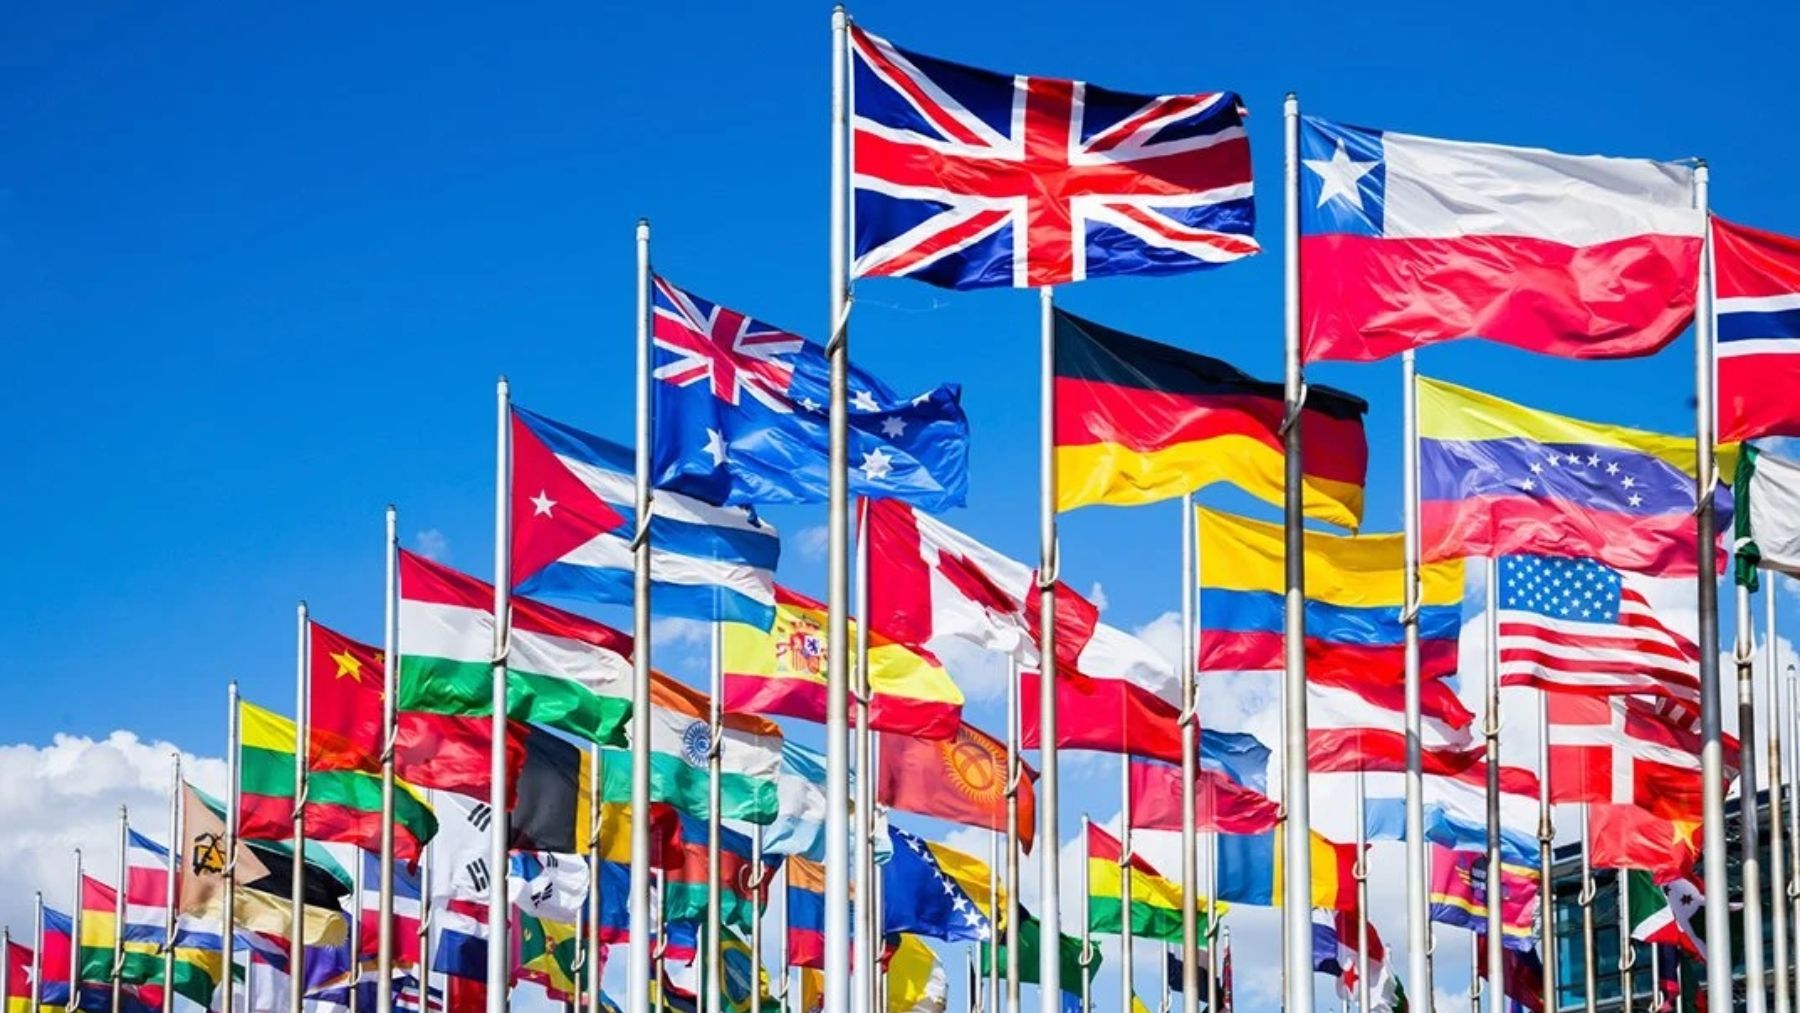 Descubre cuál es el símbolo que más se repite en las banderas de los países